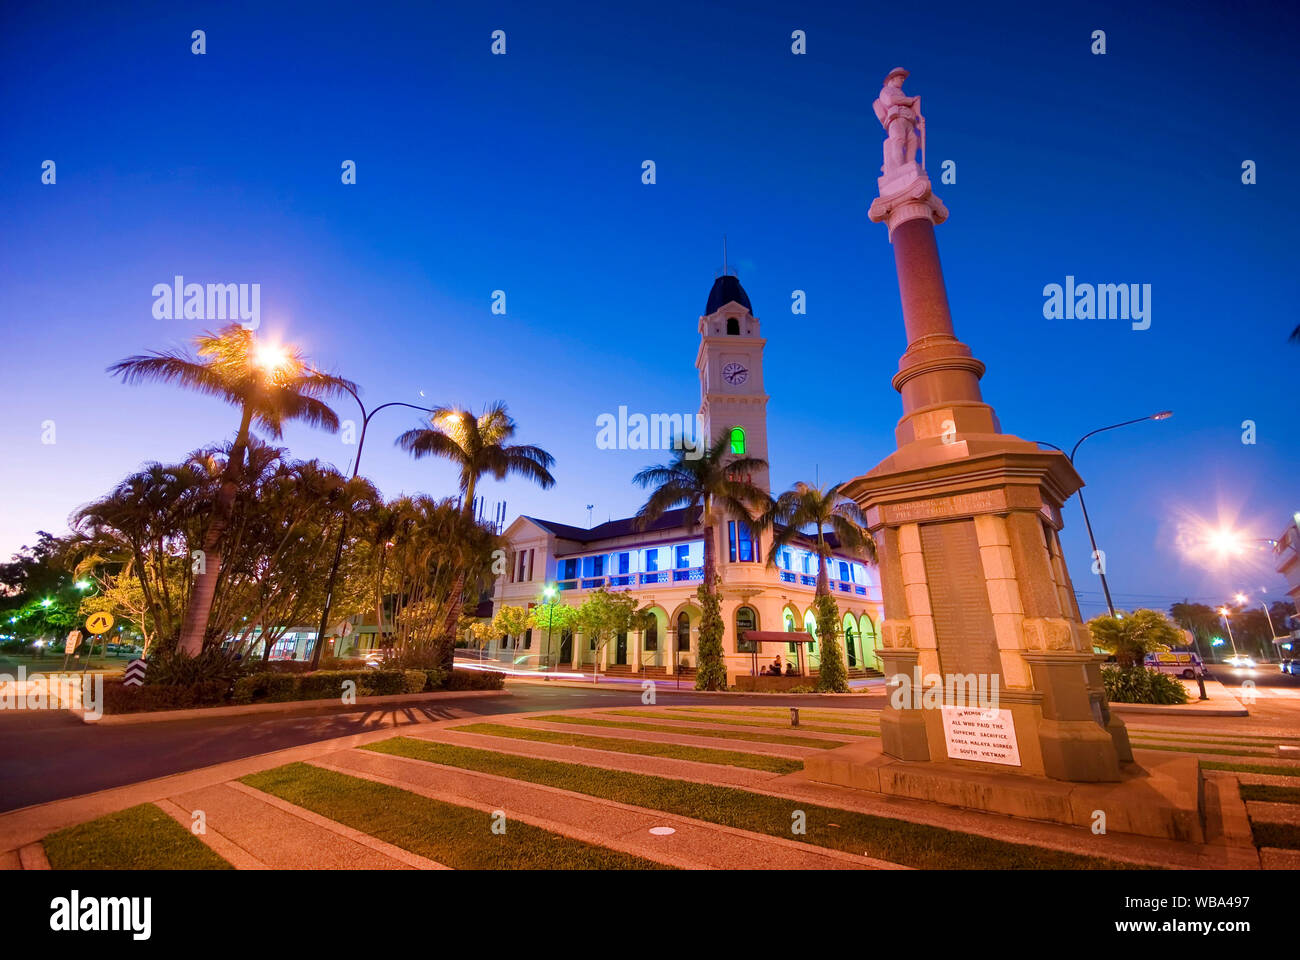 Oficina de correos con la torre del reloj, inaugurado en 1890, y el cenotafio. Bundaberg, Queensland, Australia Foto de stock